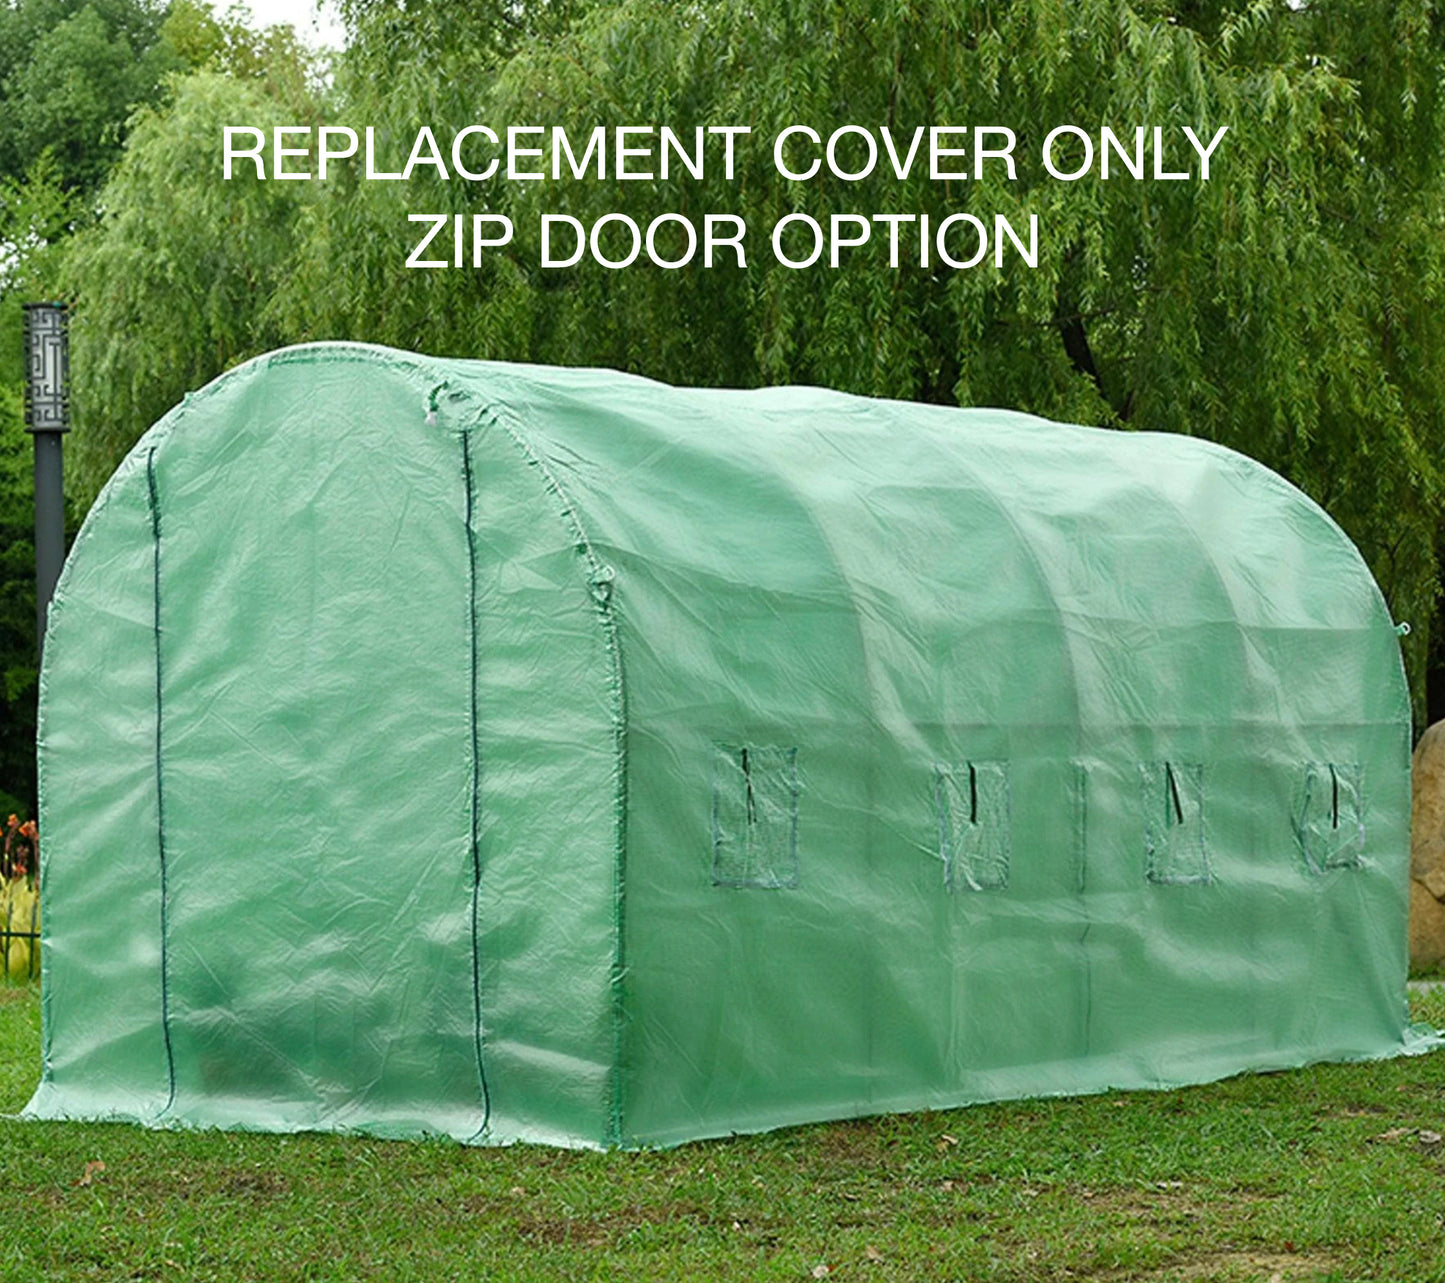 4m Replacement Polytunnel Greenhouse Cover - Zip Door